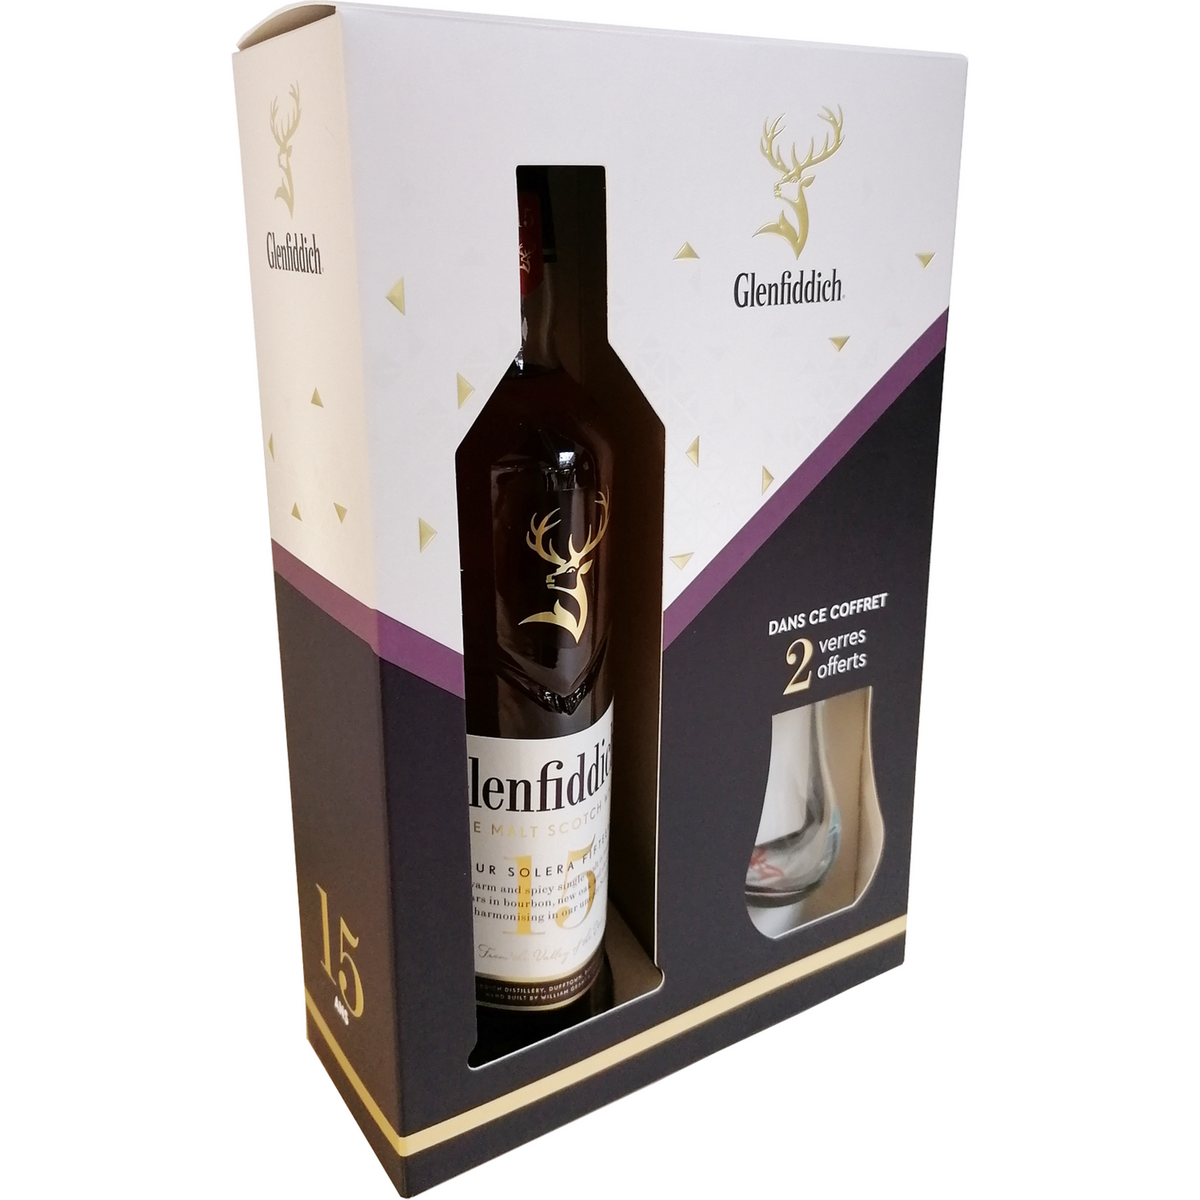 GLENFIDDICH Whisky single malt 15 ans 40% coffret avec 2 verres 70cl